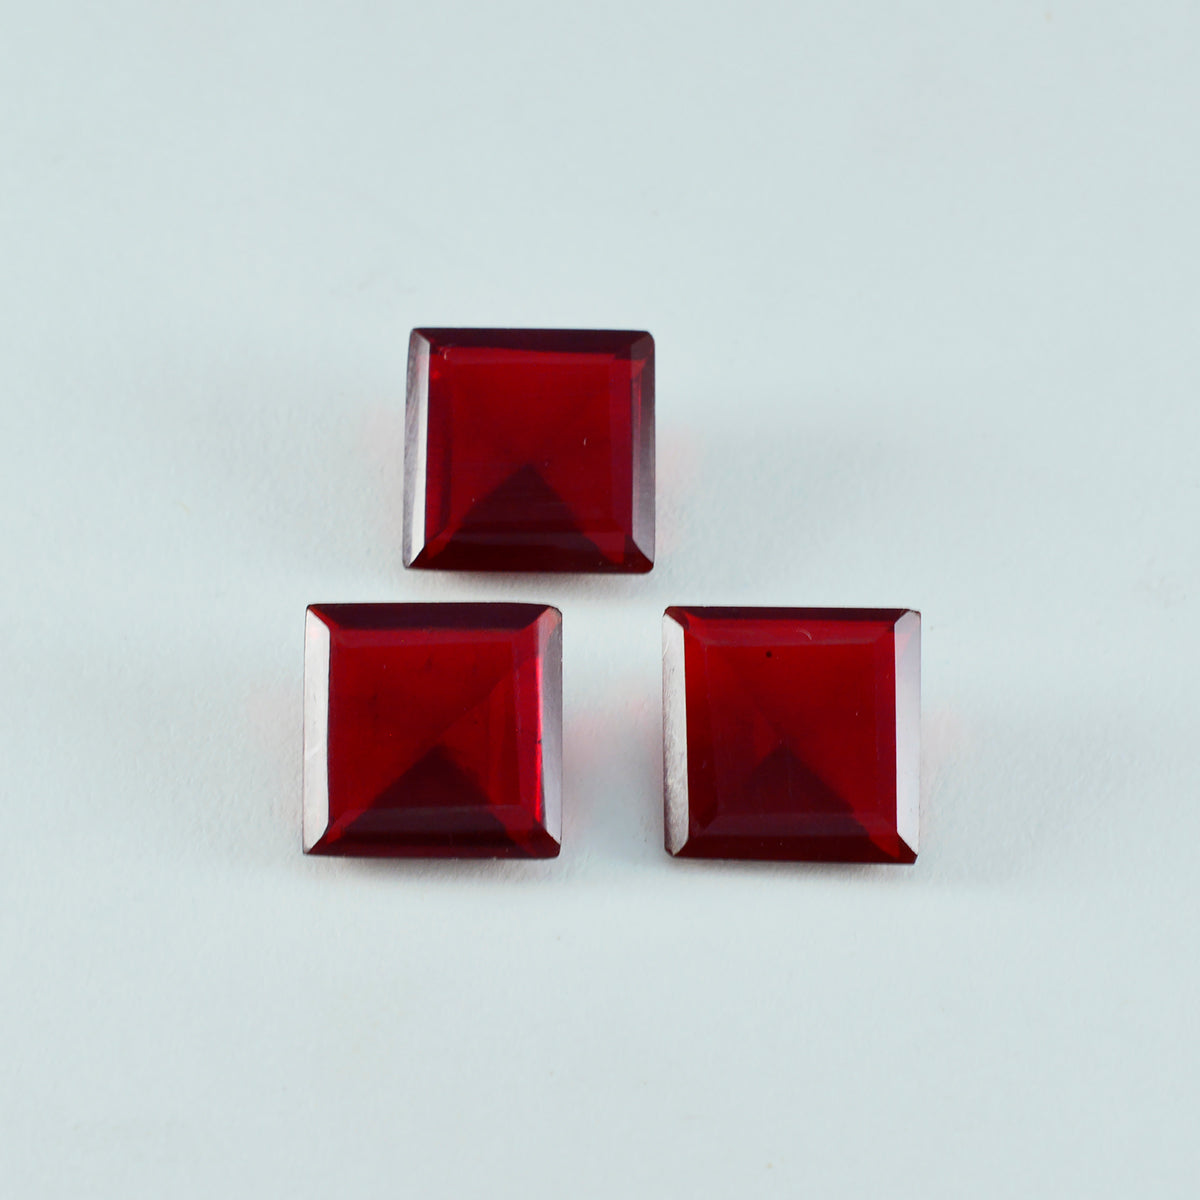 Riyogems 1 Stück roter Rubin mit CZ, facettiert, 14 x 14 mm, quadratische Form, Edelsteine von erstaunlicher Qualität